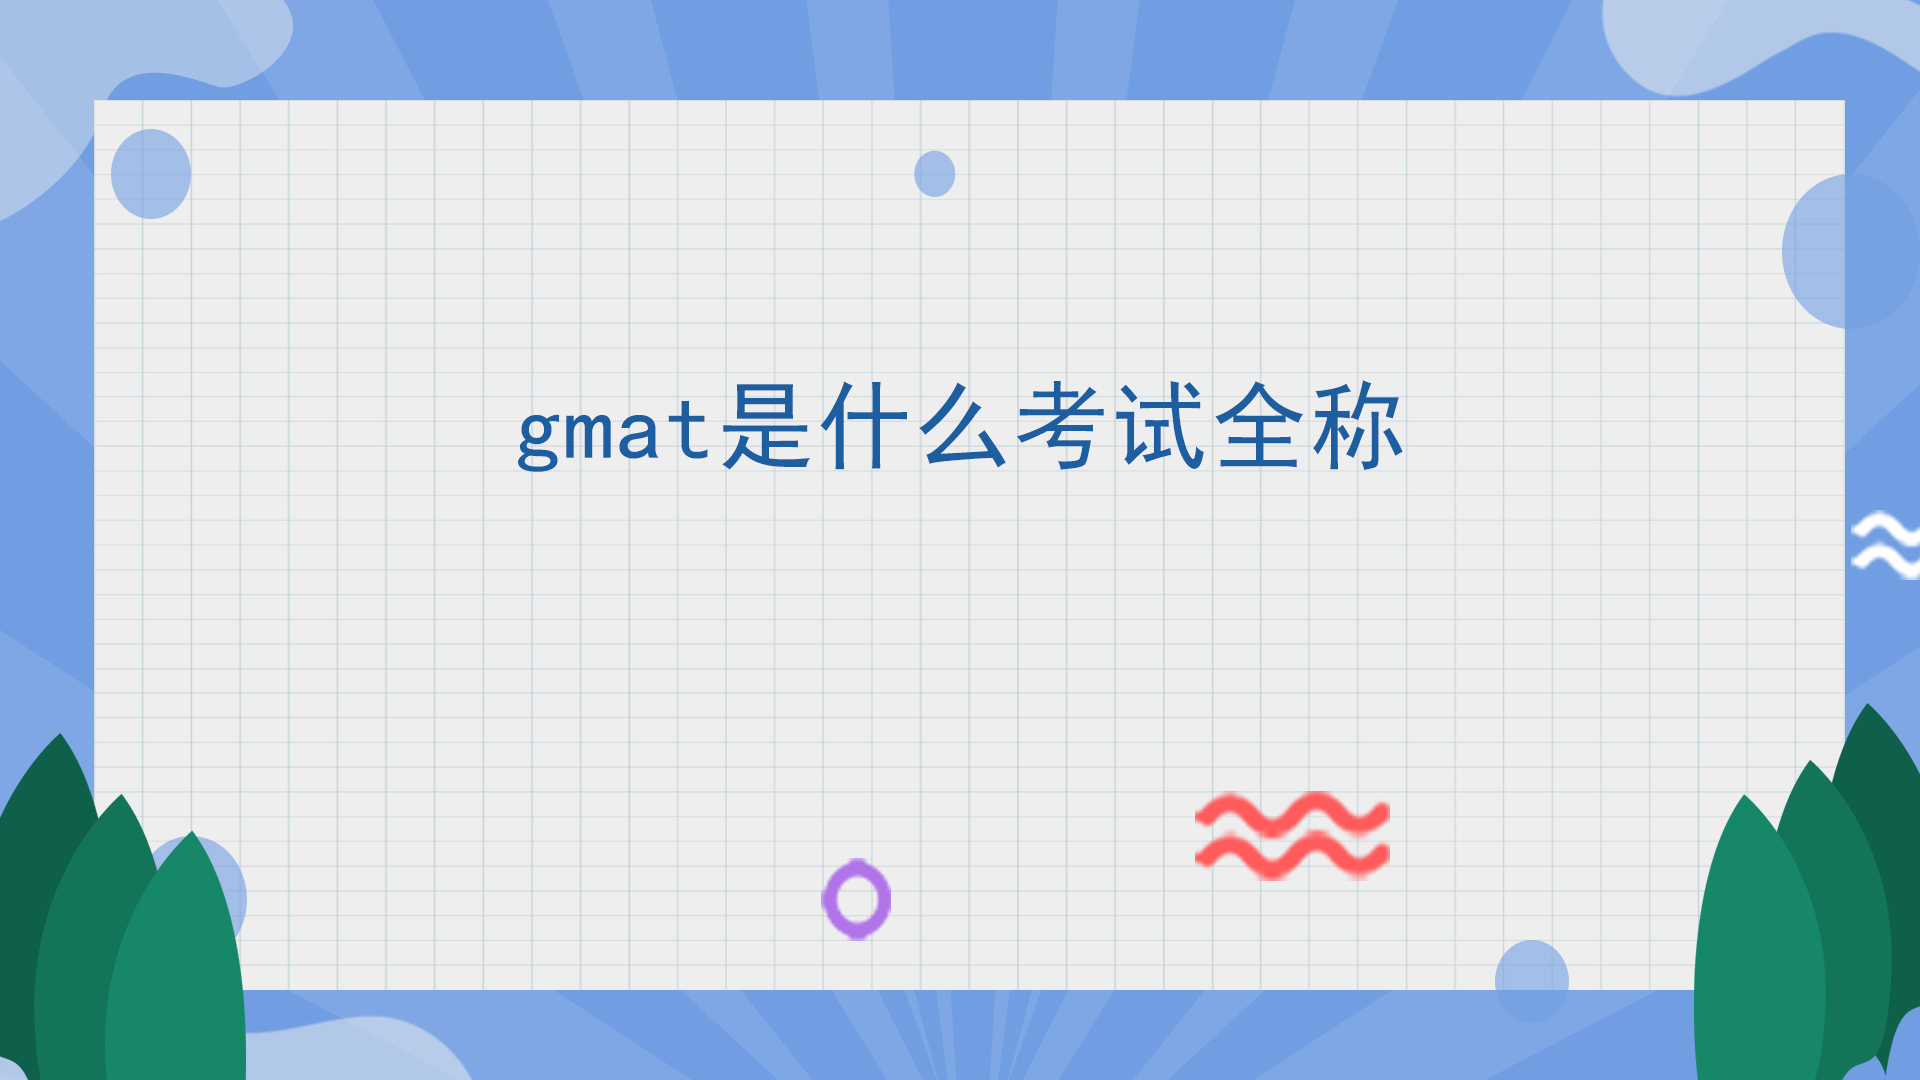 gmat是什么考试全称